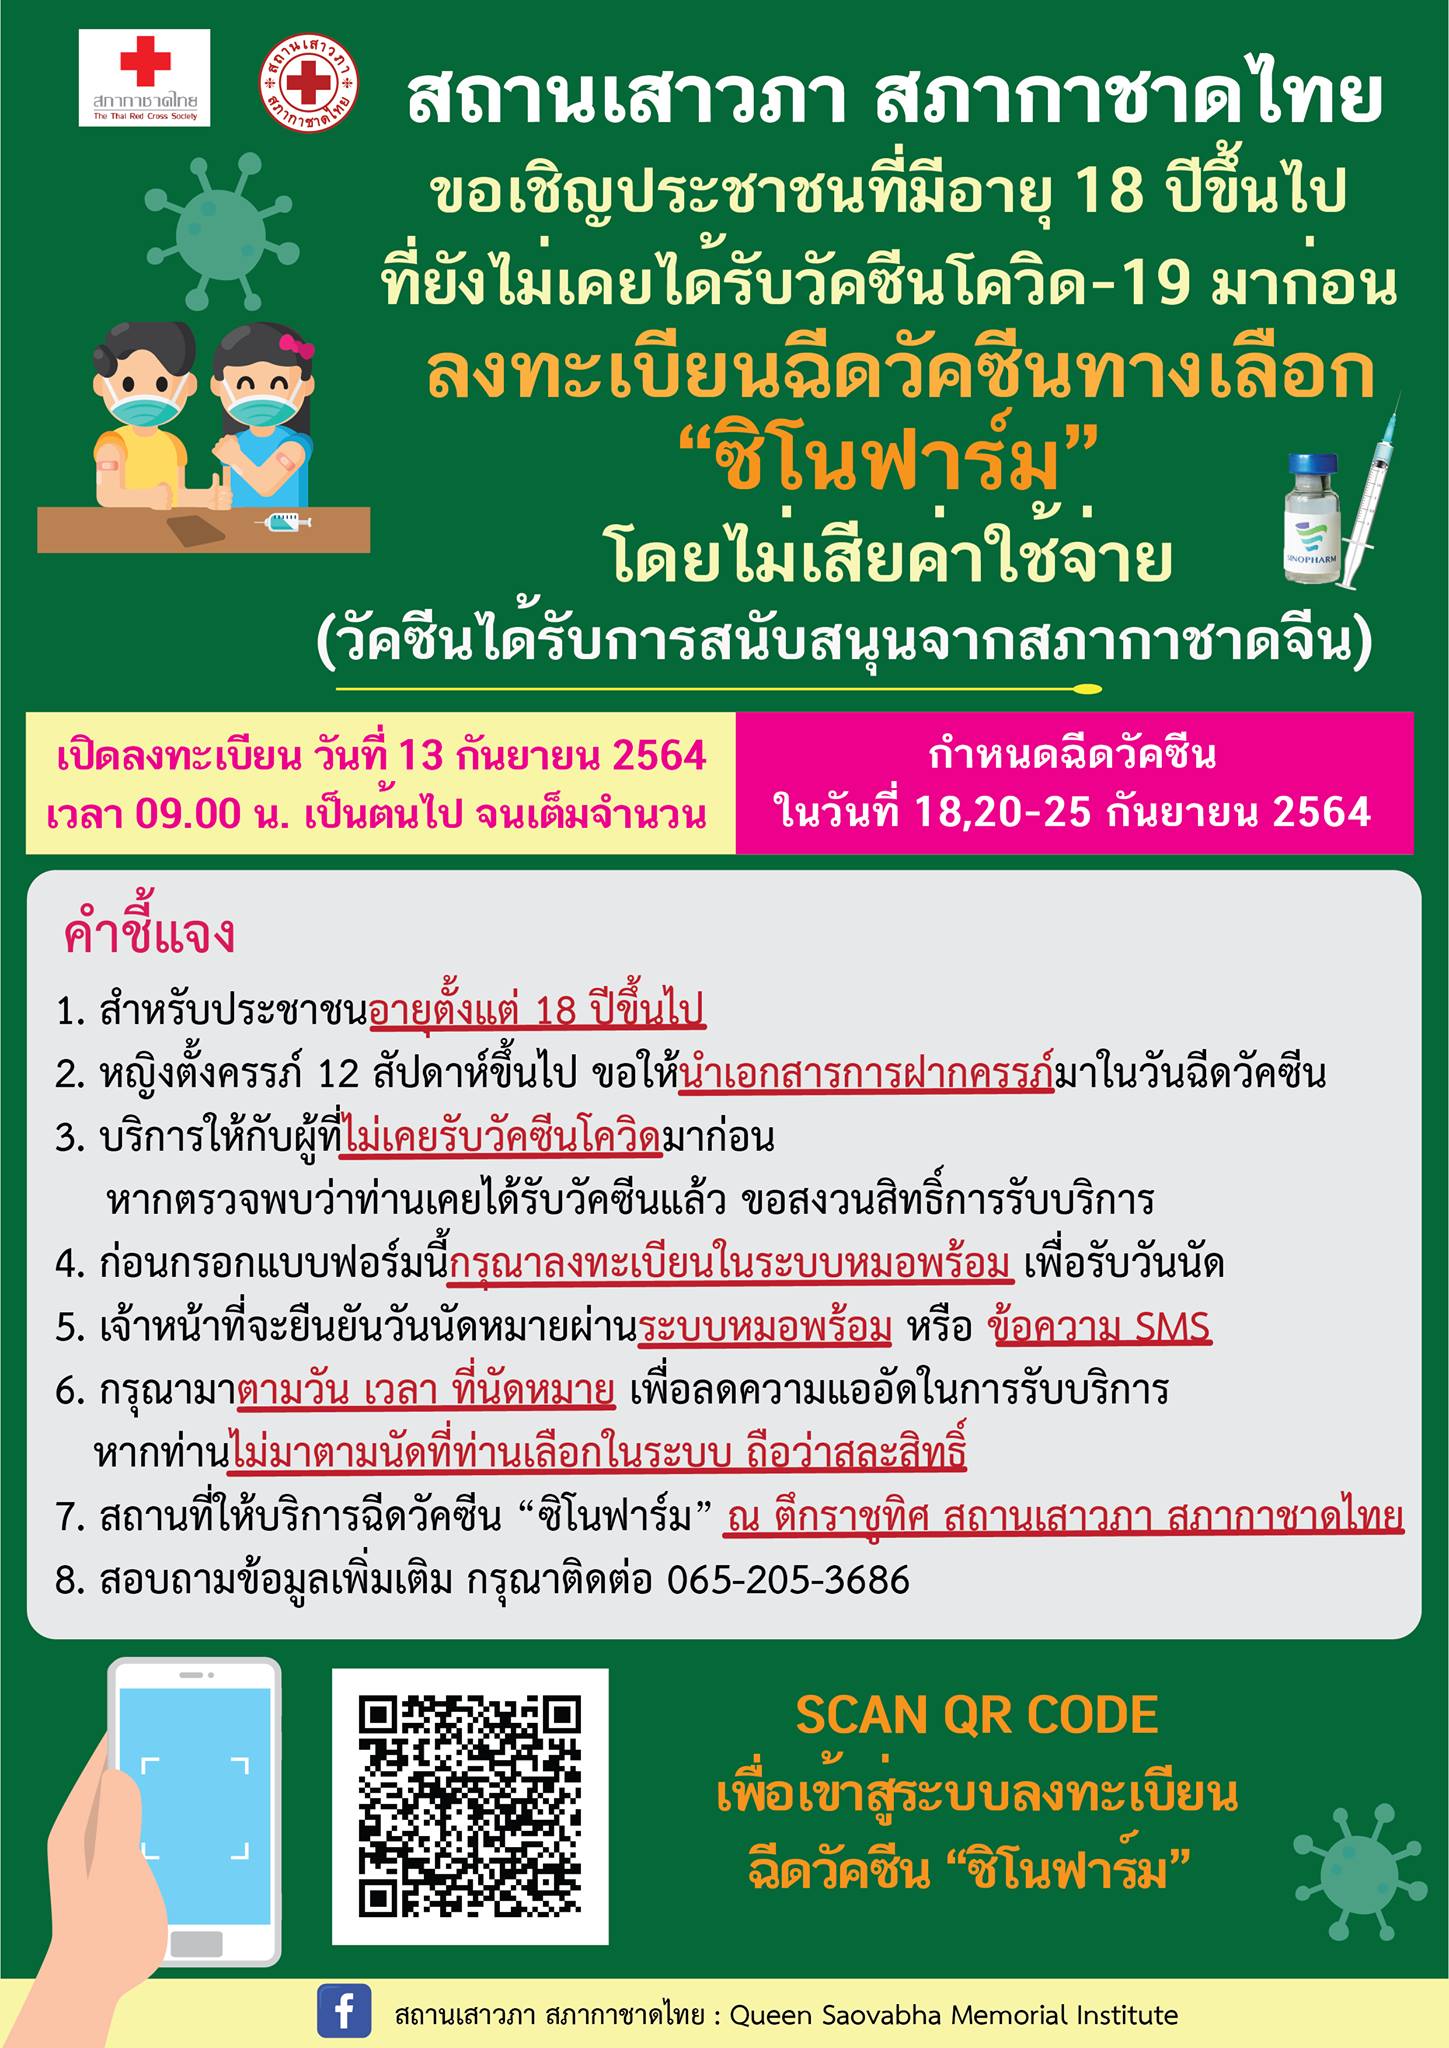 รีบเลยวันนี้! สภากาชาดไทย เปิดให้ลงทะเบียนฉีดวัคซีน'ซิโนฟาร์ม' ฟรี